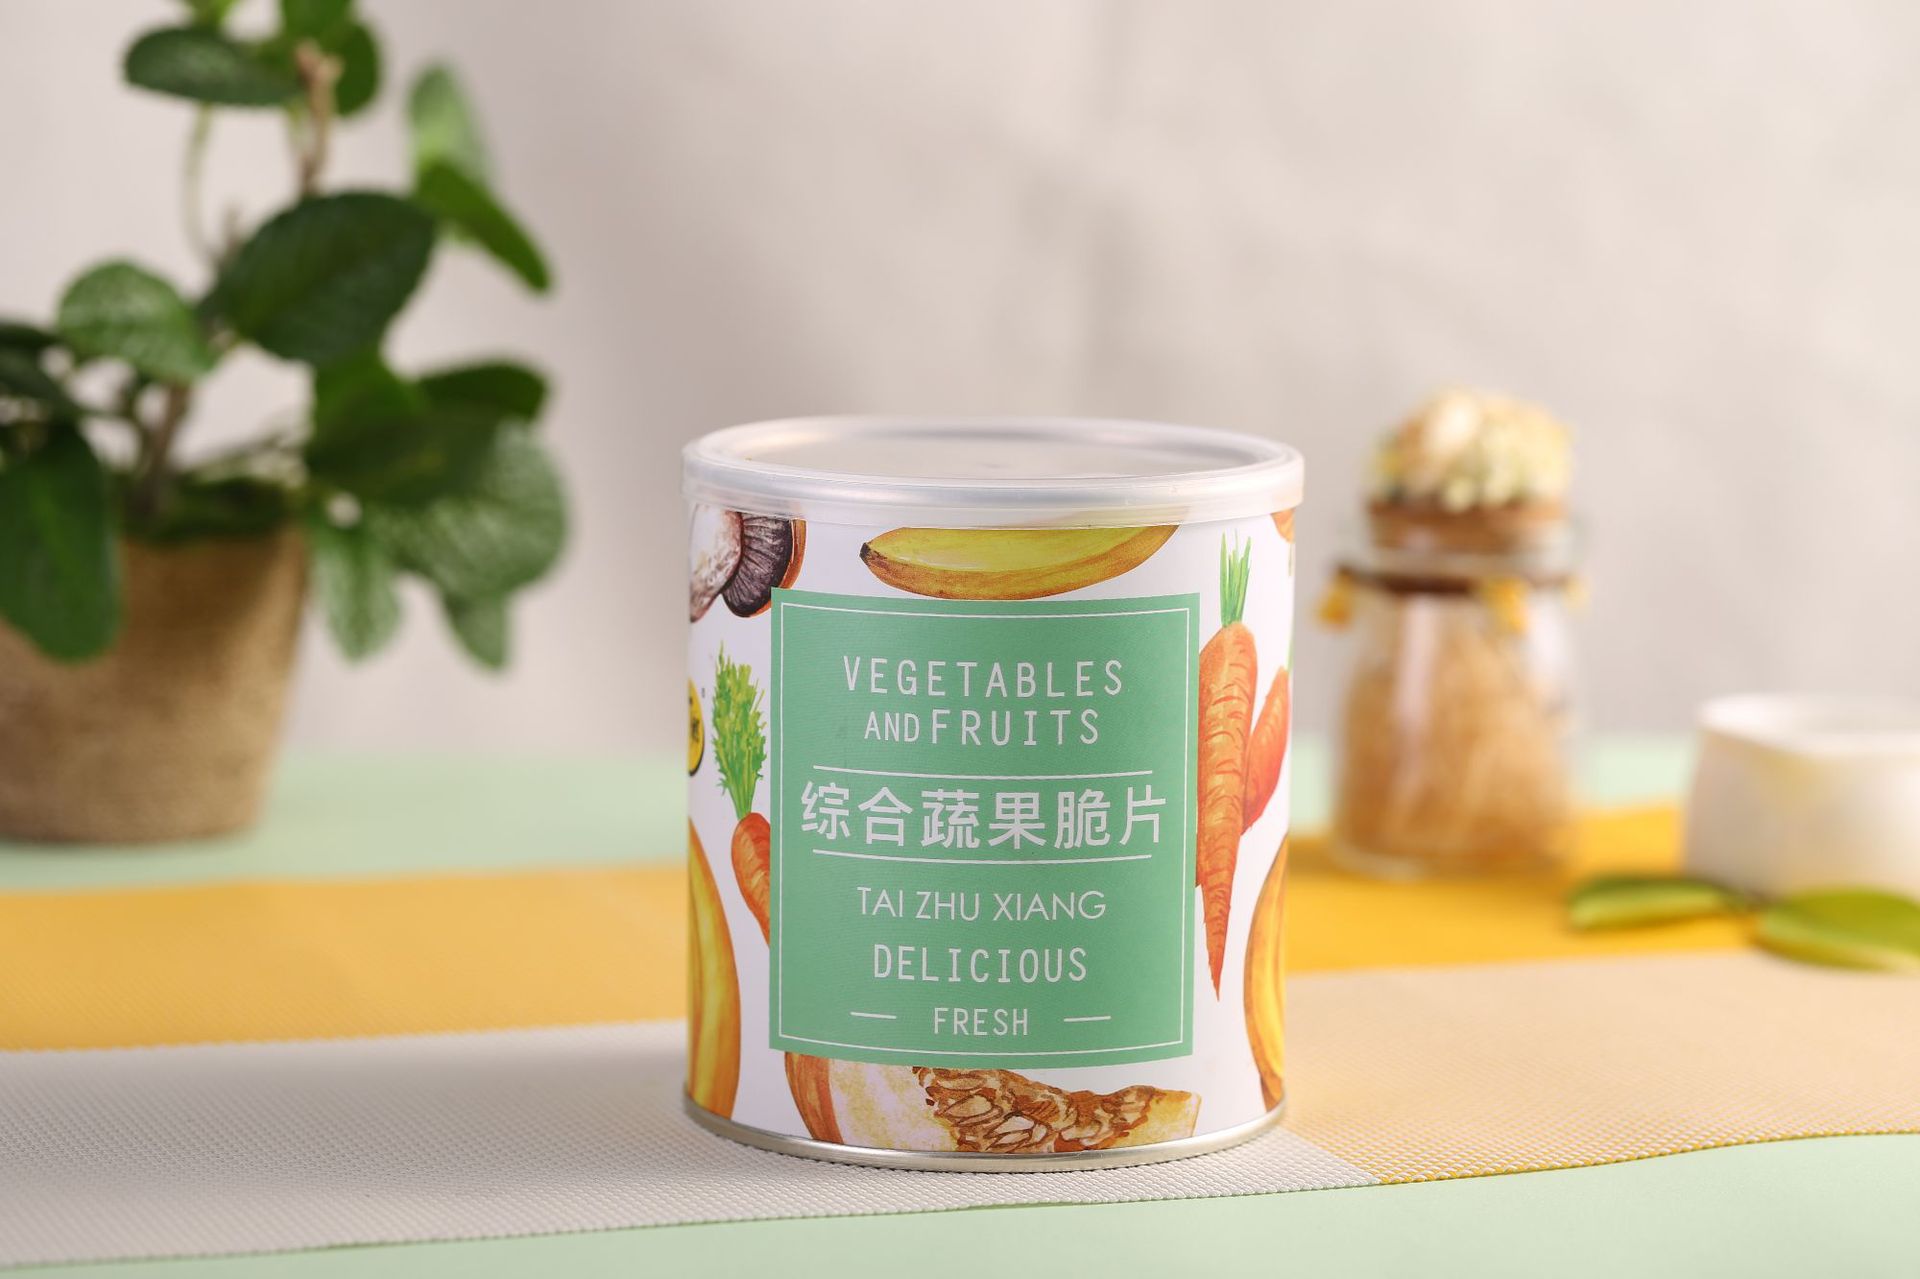 台竹乡低温油炸综合蔬果脆片台湾进口零食品果干微商一件代发 阿里巴巴